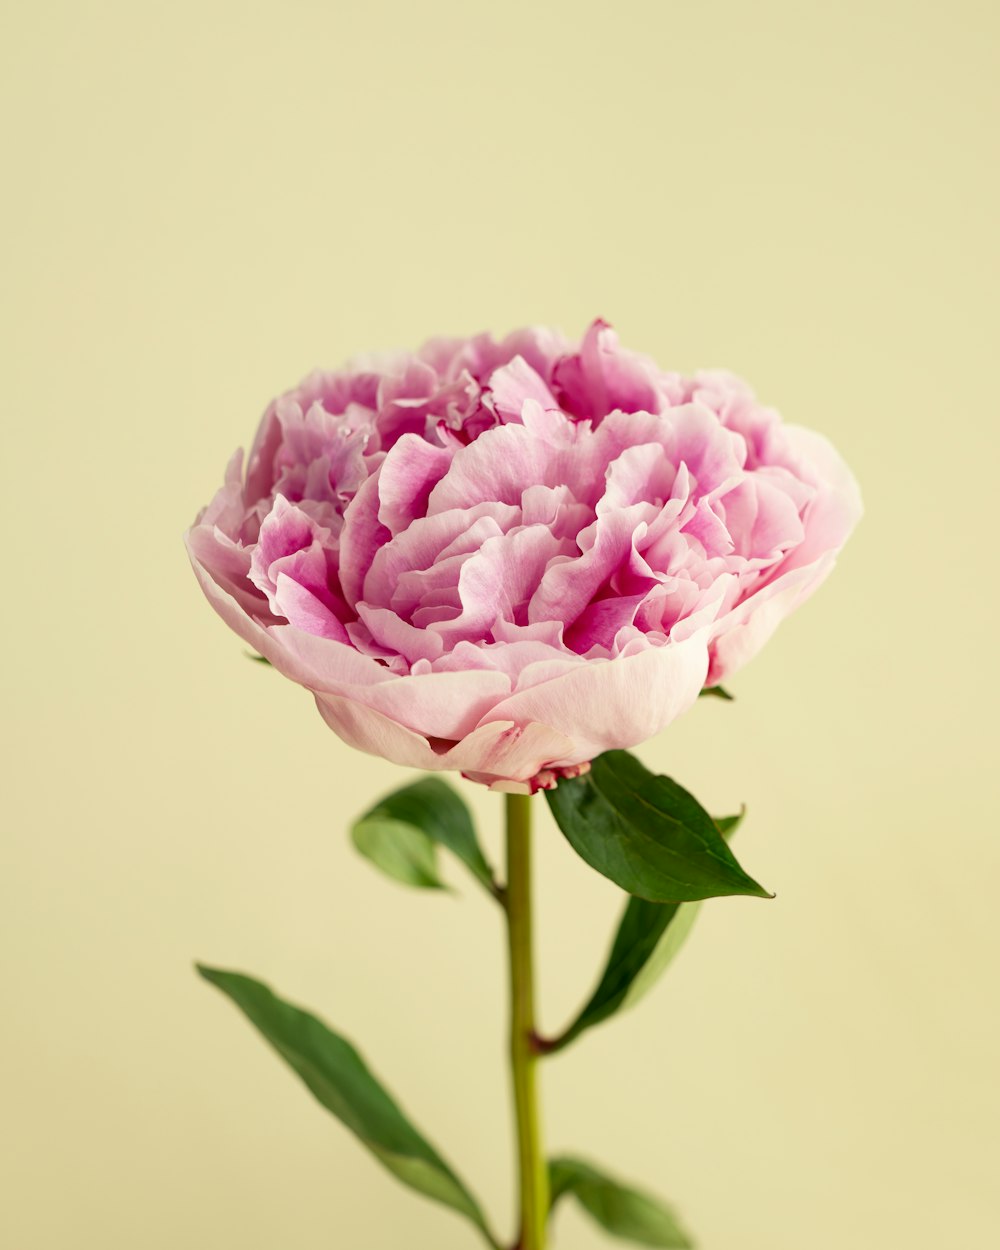 Hoa mẫu đơn là loài hoa thể hiện sự đồng cảm, sự yêu thương và sự tinh tế. Unsplash là nơi dành cho những ai yêu thích hoa mẫu đơn với những hình ảnh tuyệt đẹp cùng những biểu tượng độc đáo. Hãy thưởng thức những tác phẩm nghệ thuật đầy sáng tạo này và cảm nhận sự tinh tế và độc đáo của hoa mẫu đơn.